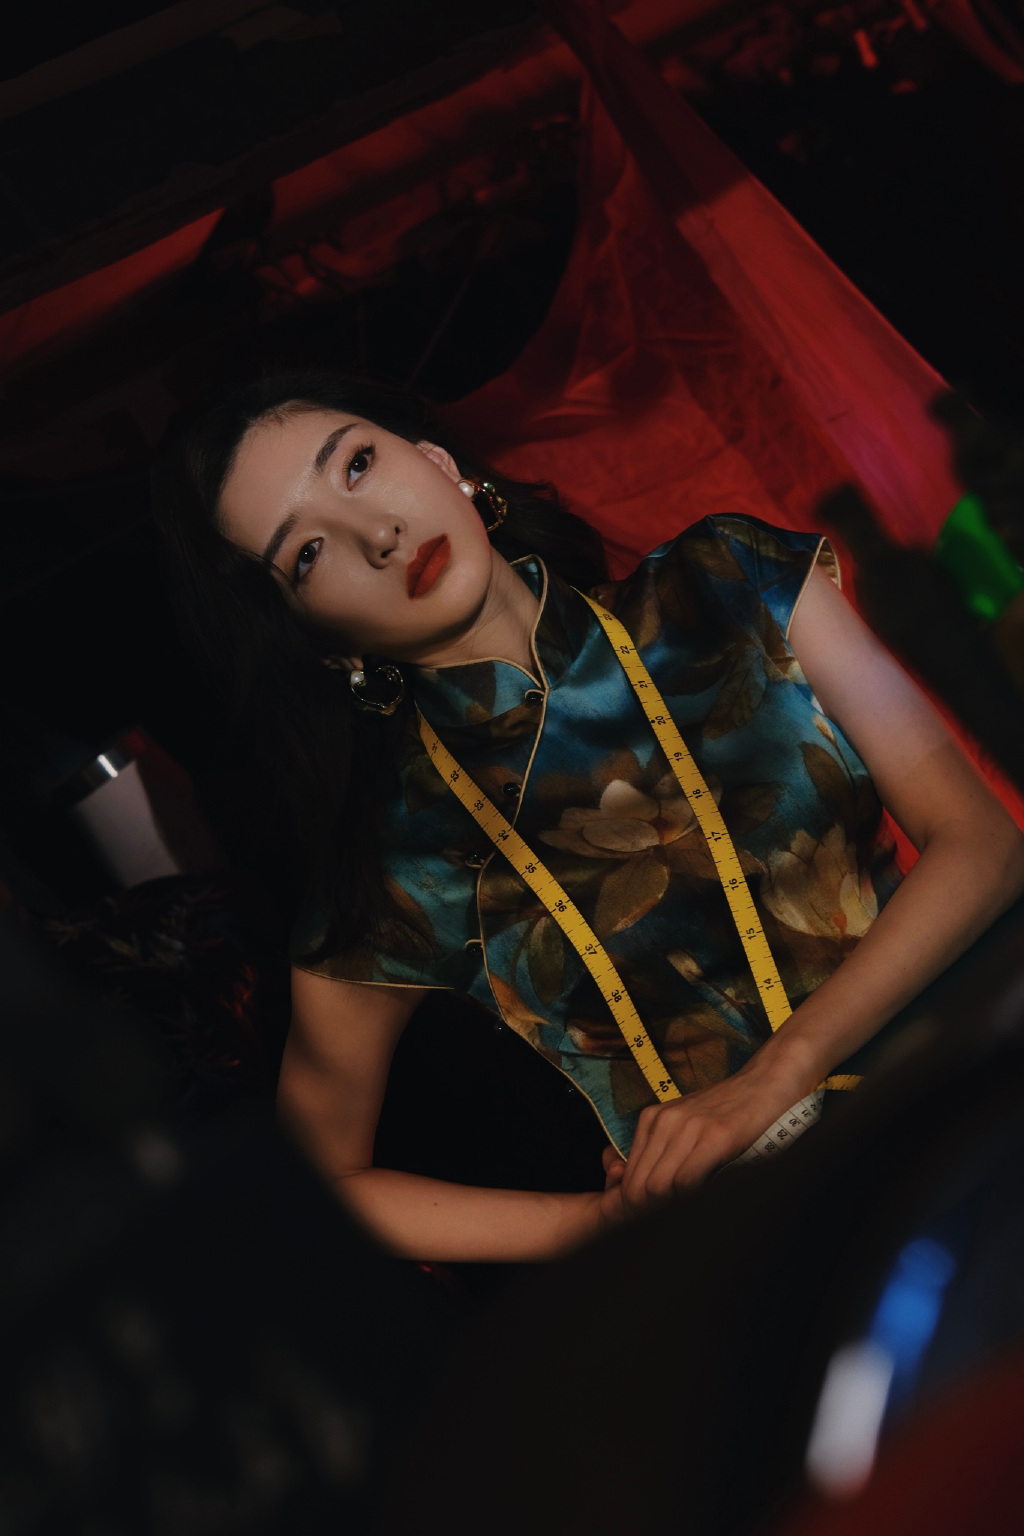 江疏影夜上海大片 完美演绎了旗袍里的韵味与浪漫